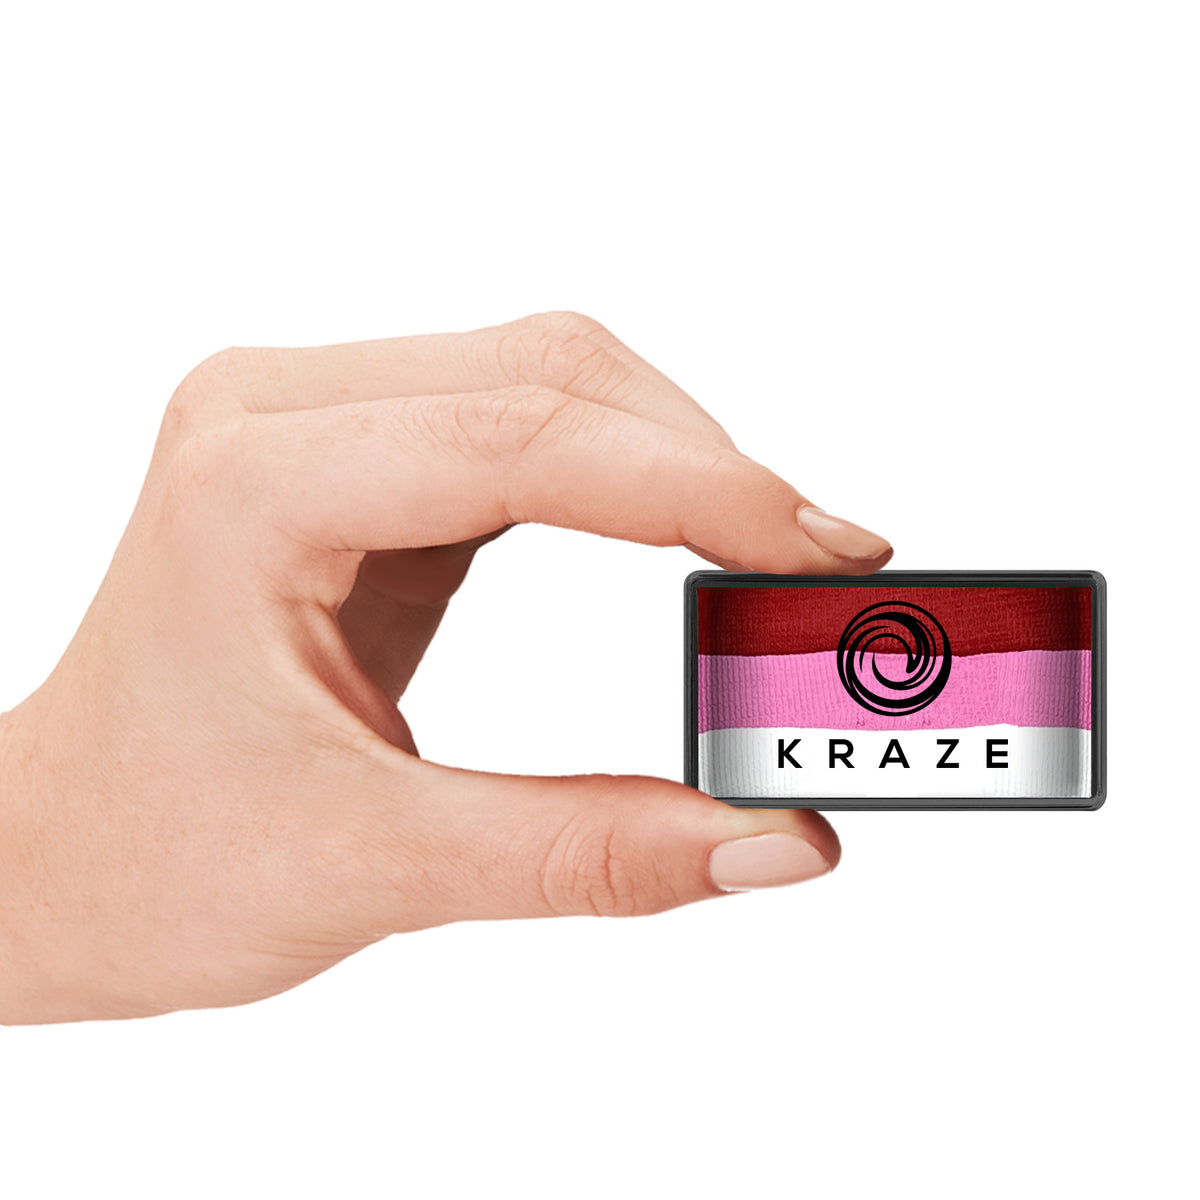 Kraze FX Domed One Stroke Cake - Pink Rose (25 gm)